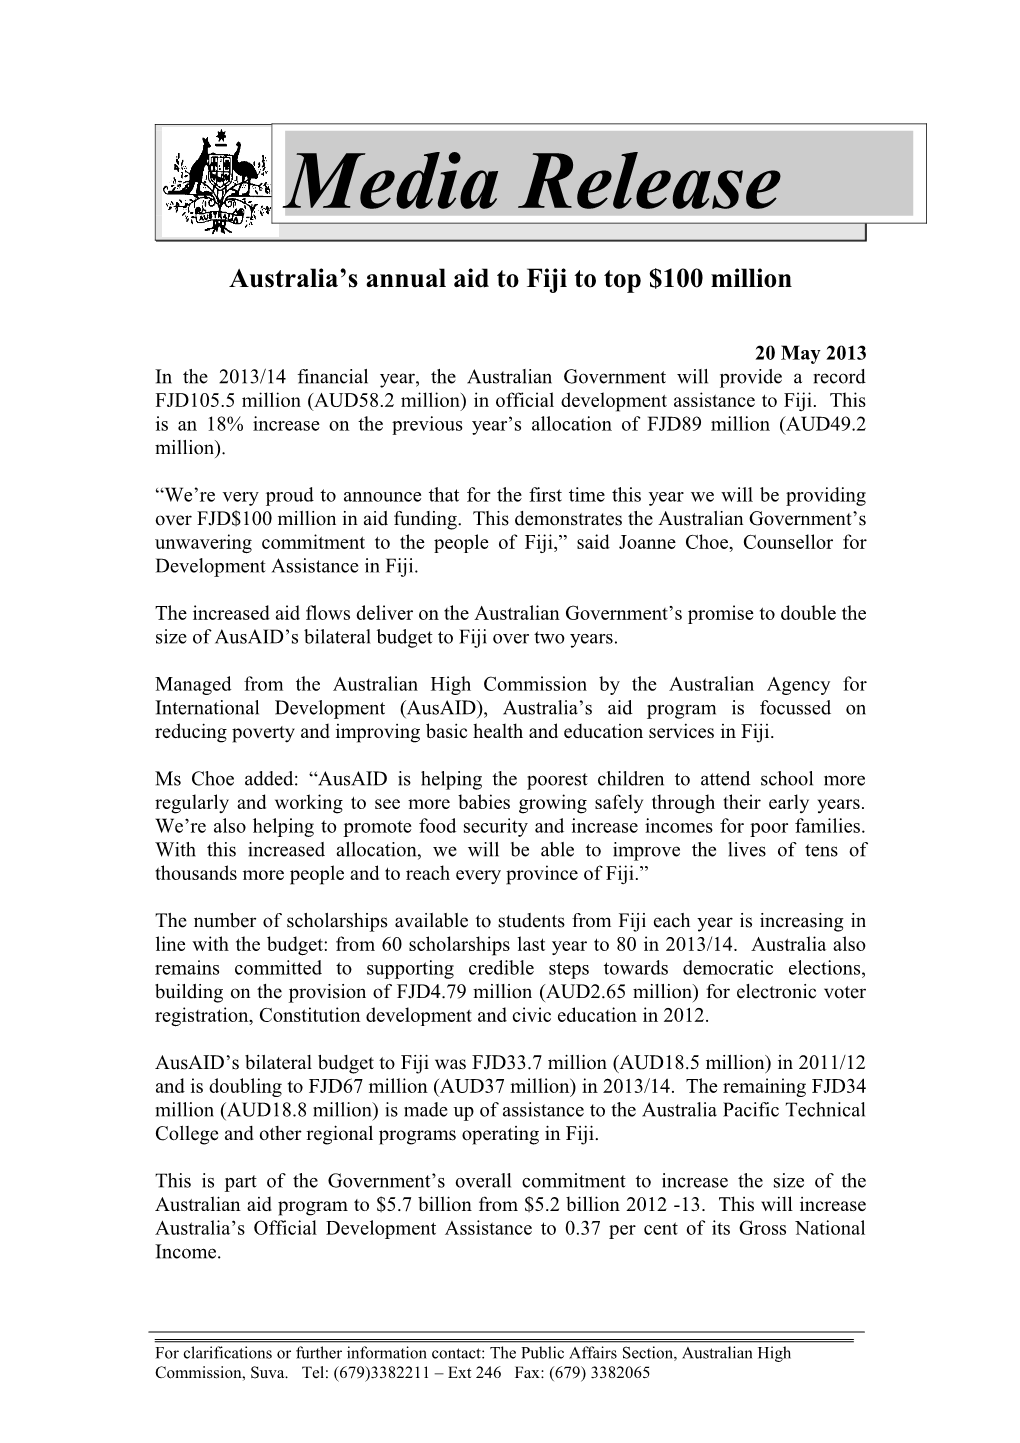 Australia S Annual Aid to Fiji to Top $100 Million